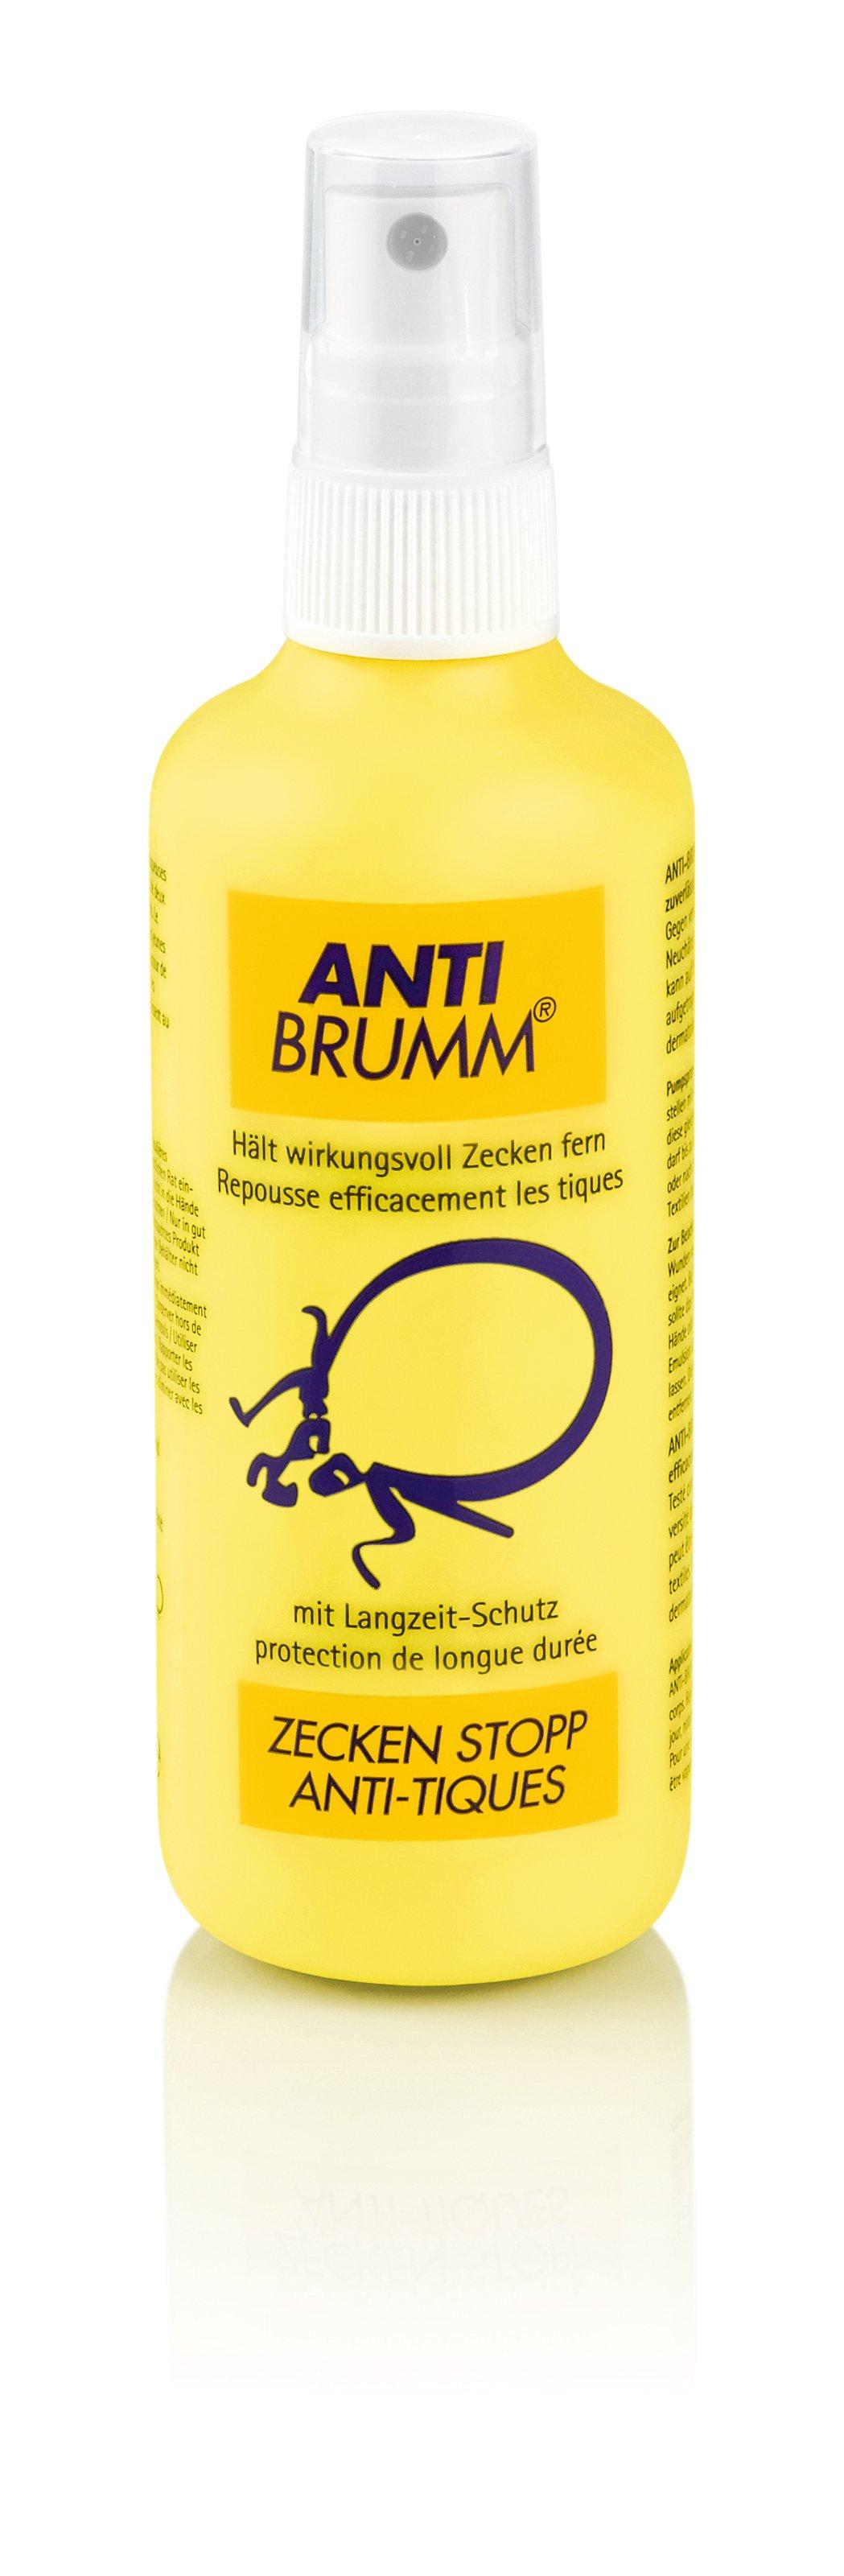 Image of Anti-Brumm Zecken Stopp Spray Zecken Stop - 150 ml